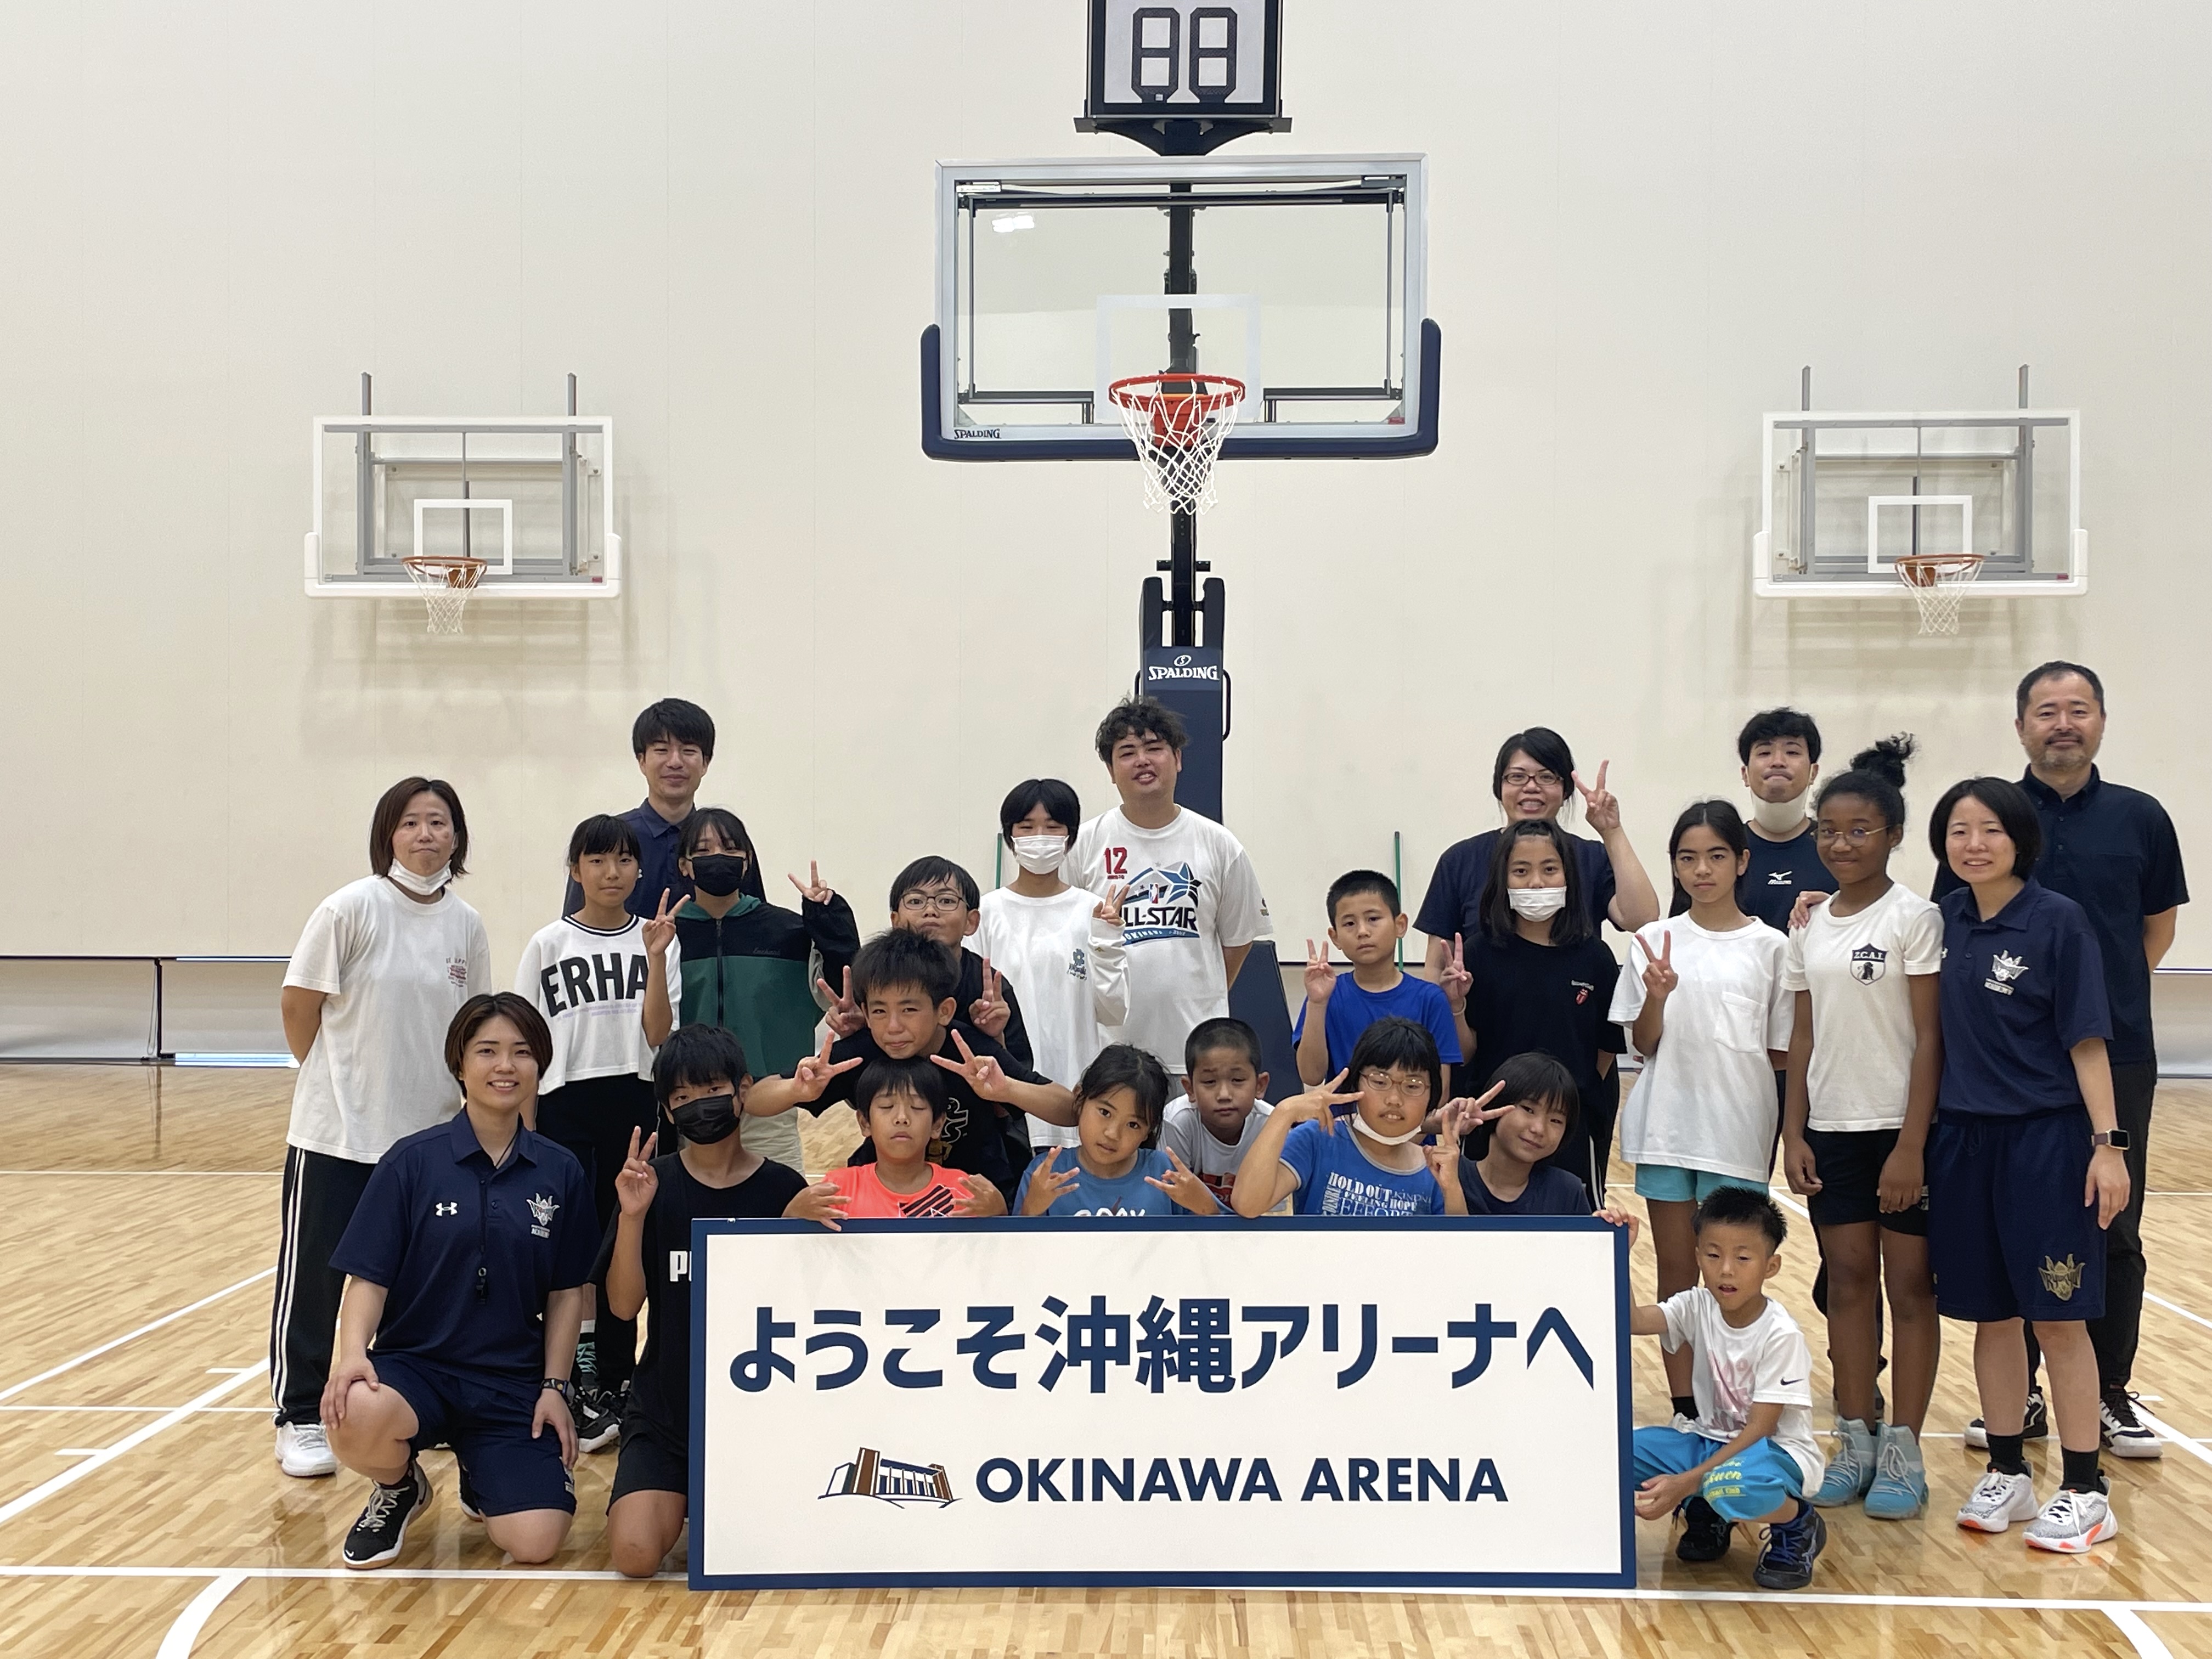 「第11回沖縄アリーナ サタデースポーツ教室」の報告